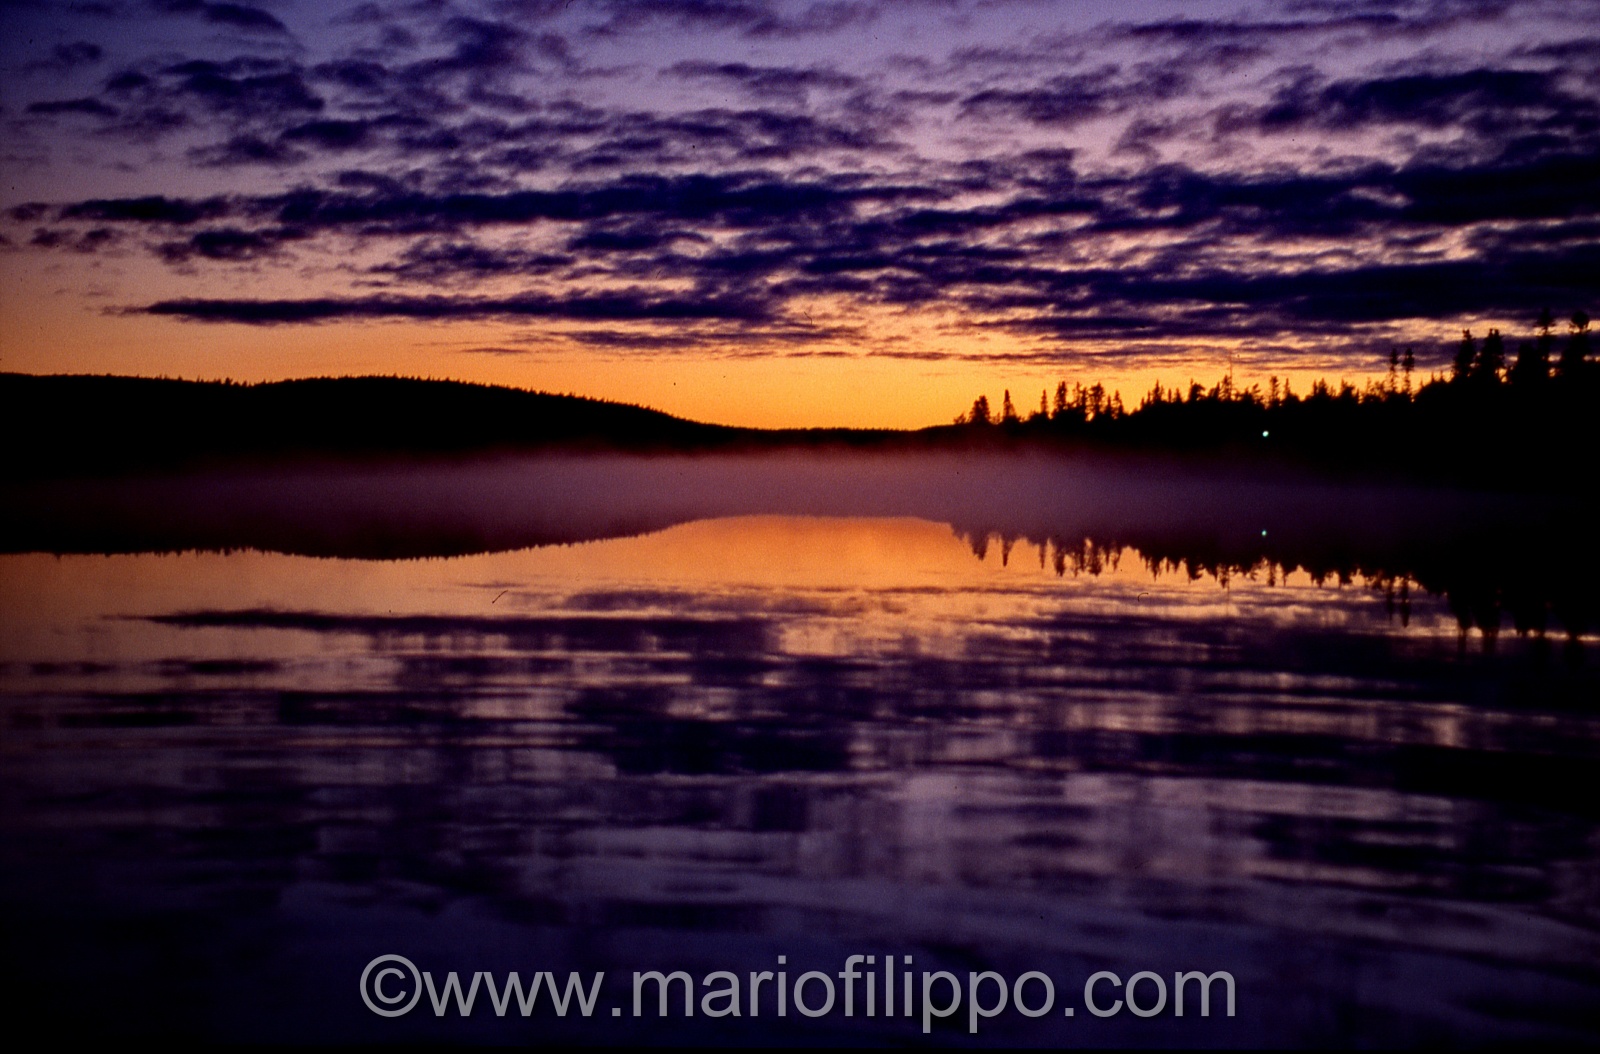 finlandia riflessi sul lago al tramonto